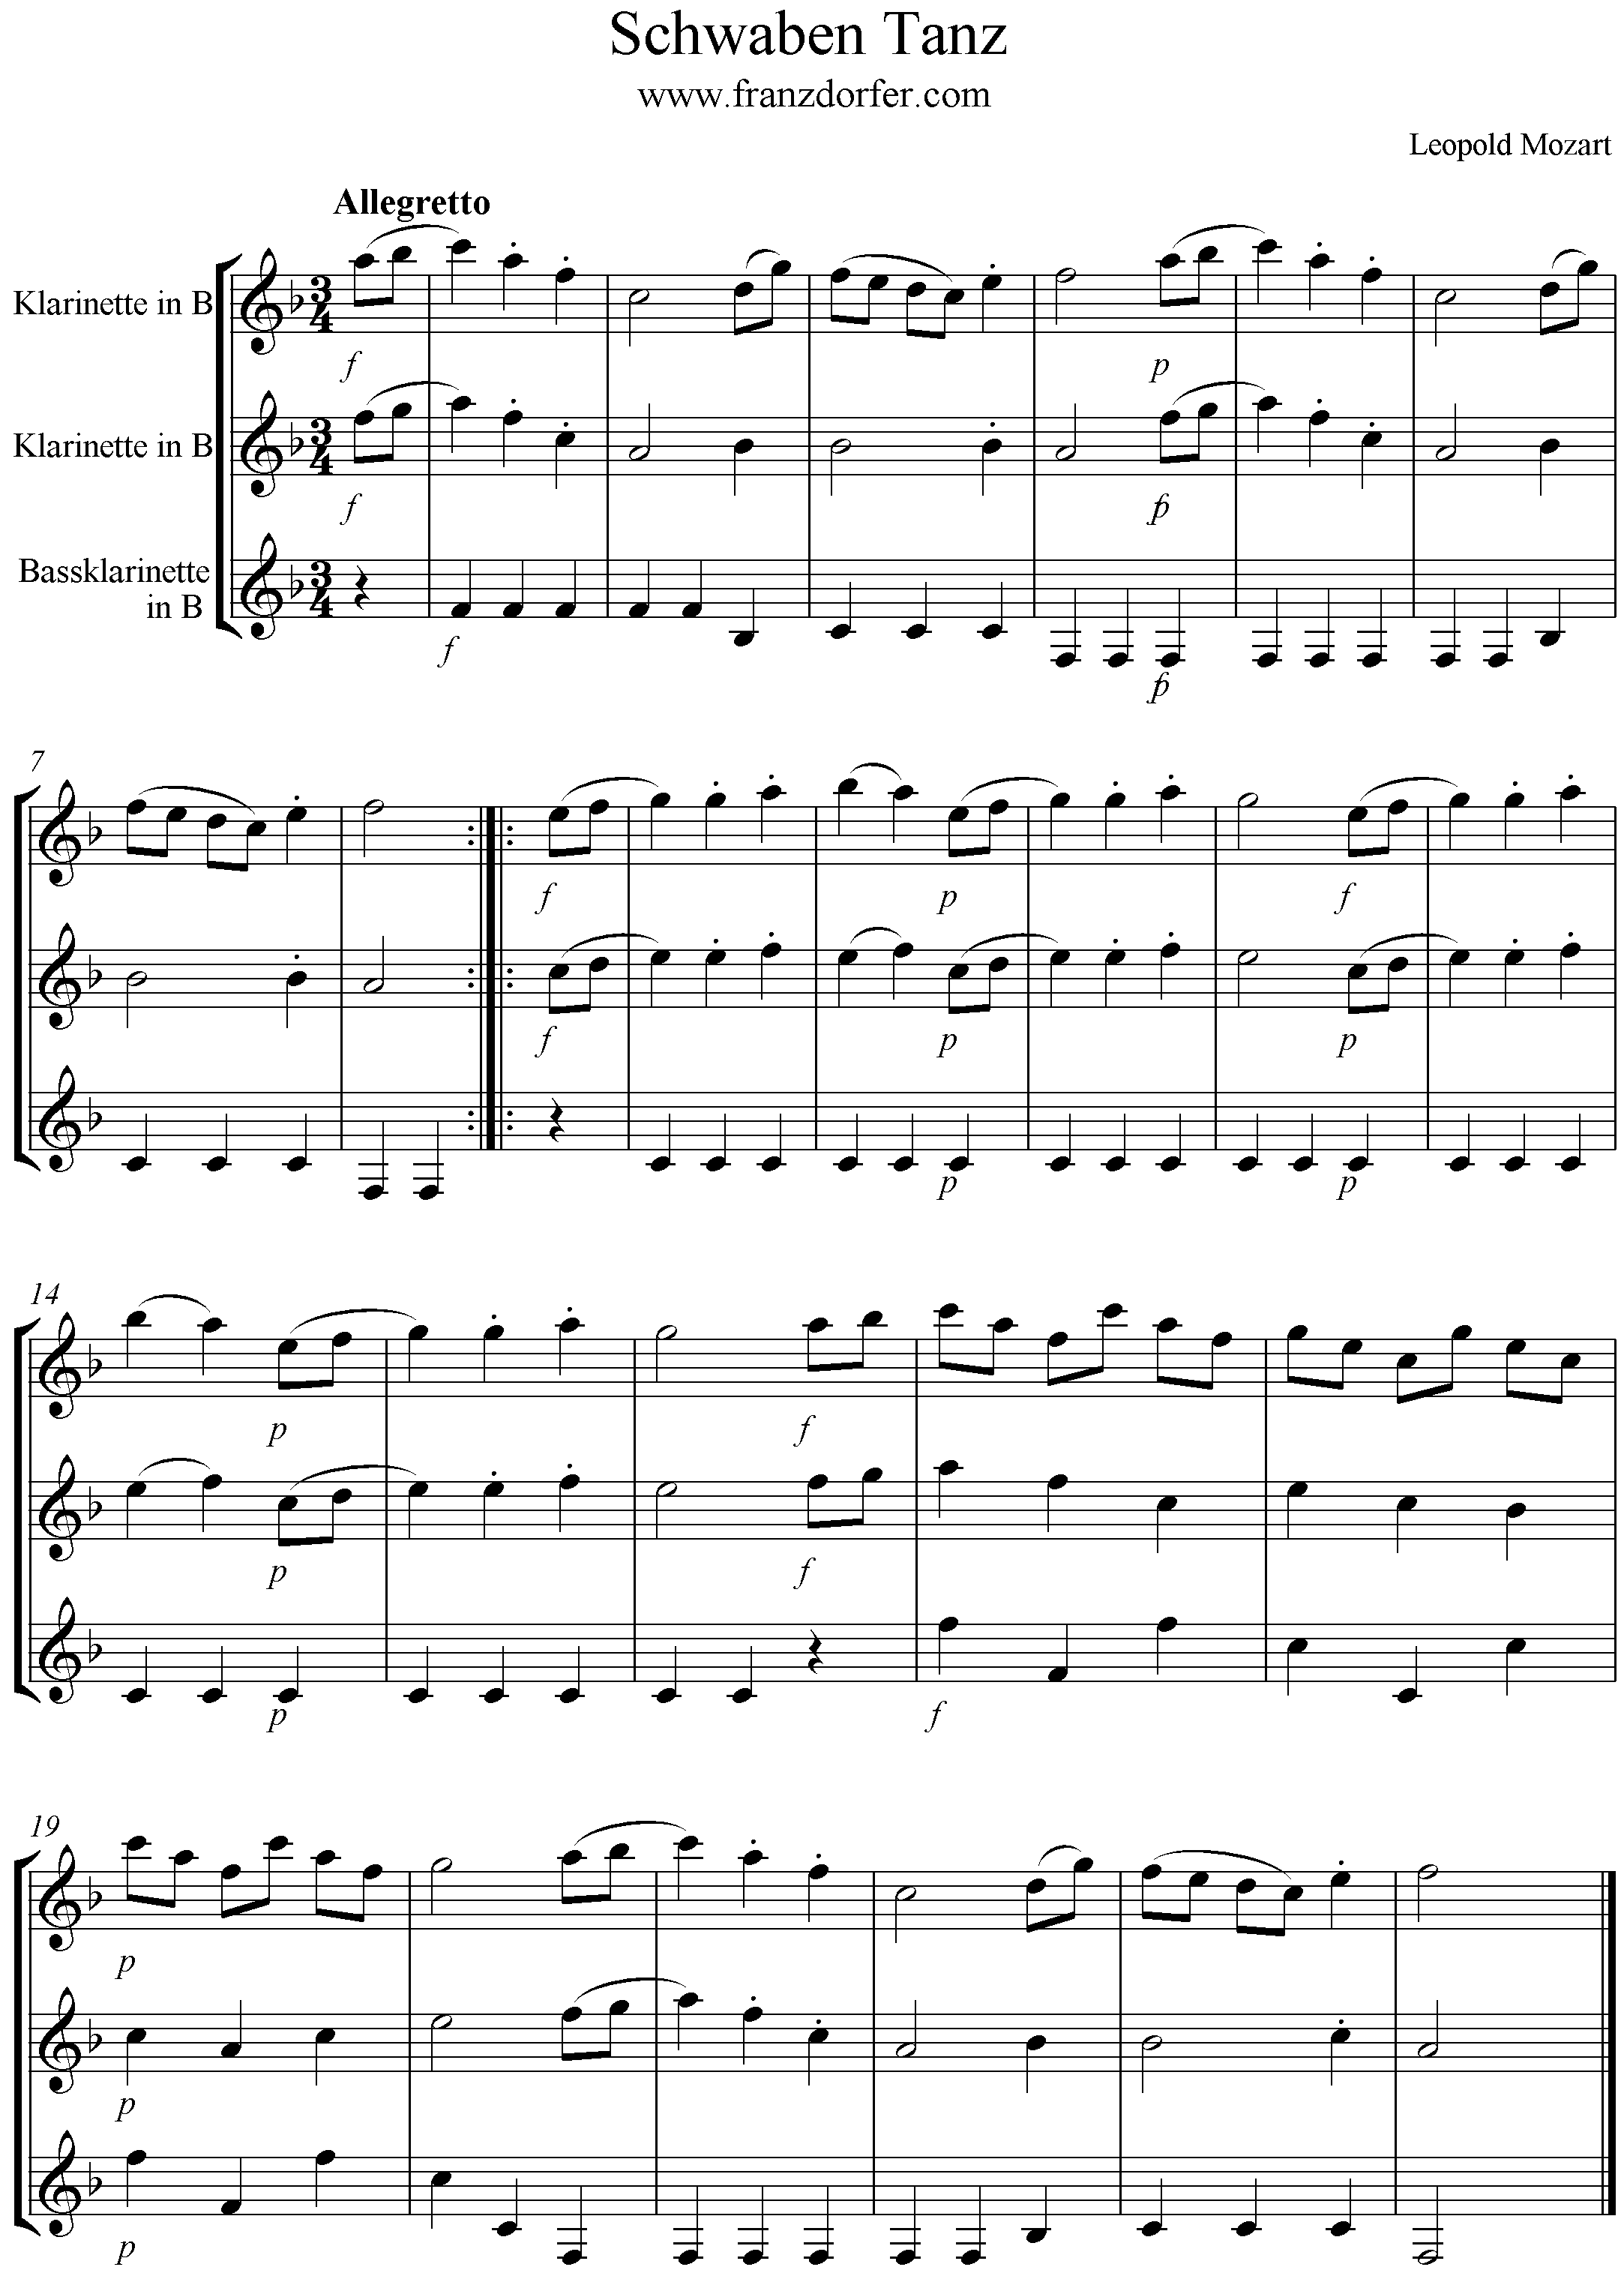 Schwabentanz, Mozart, Trio, KLarinette